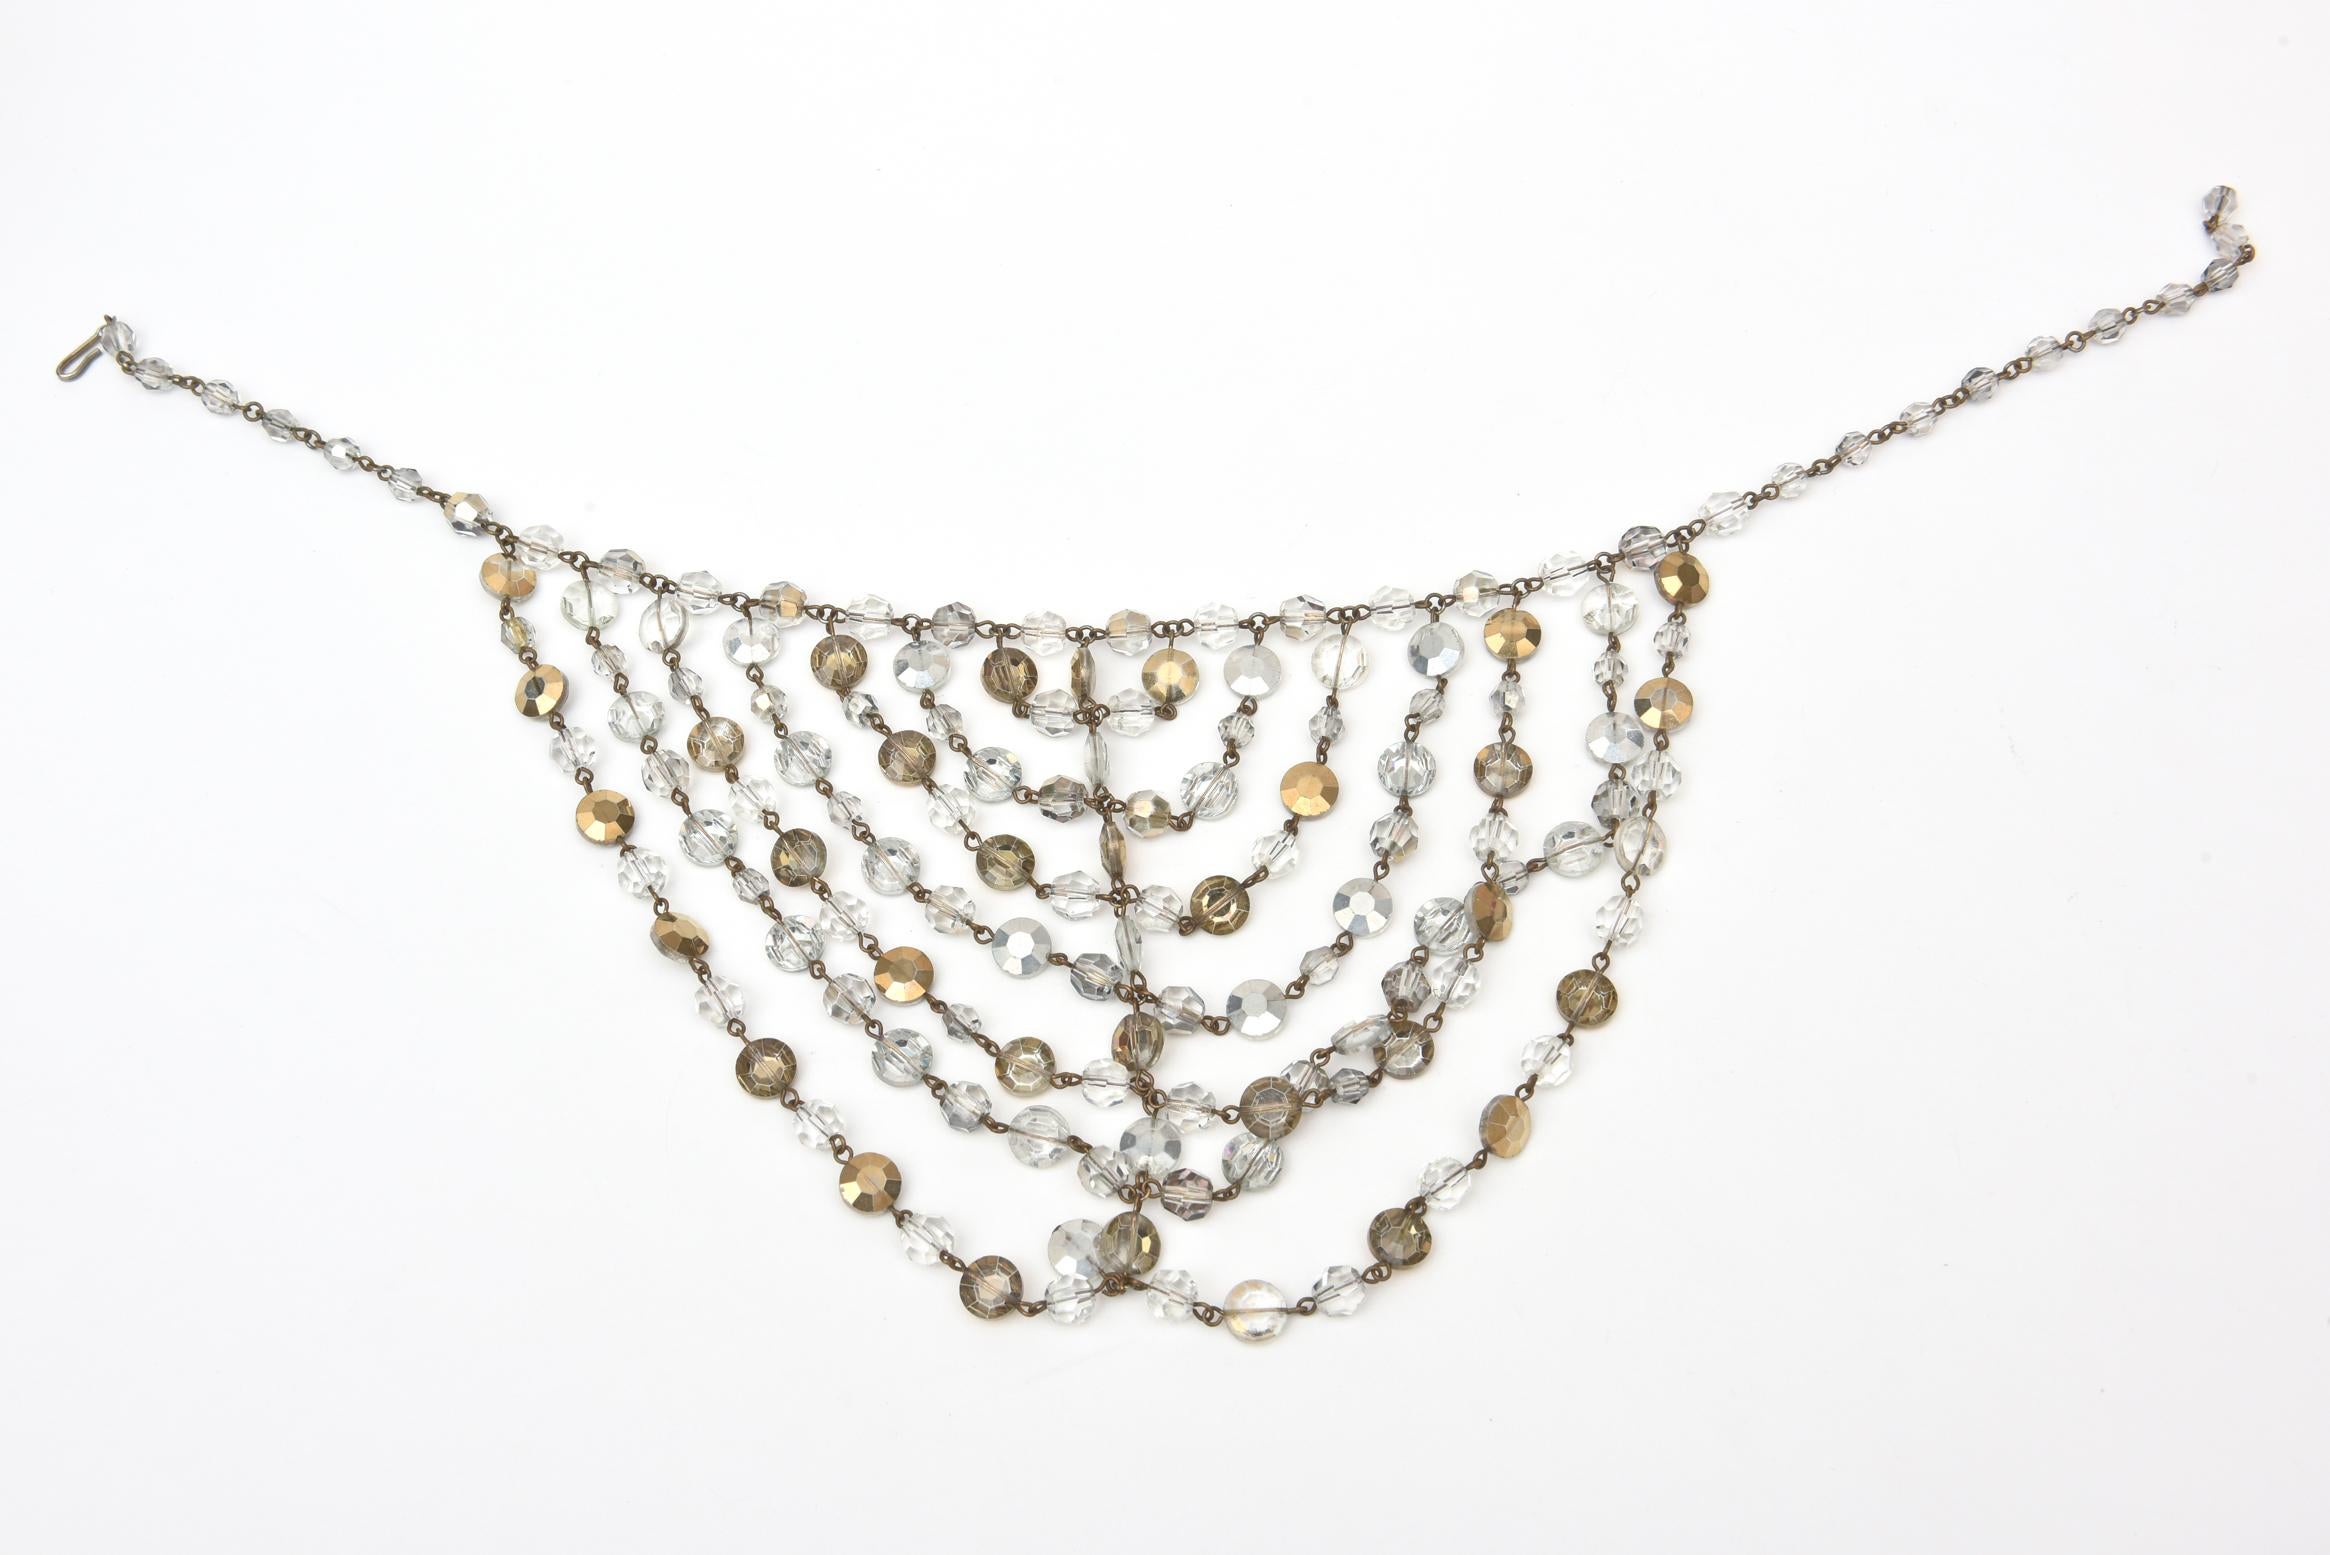 Diese atemberaubende, vielseitige Vintage-Latz-Halskette besteht aus mehreren Schichten österreichischer Kristalle im Facettenschliff, die in Form einer Latz-Halskette aufgereiht sind. Sie sind aus Gold und klaren Kristallen. Dies ist eine